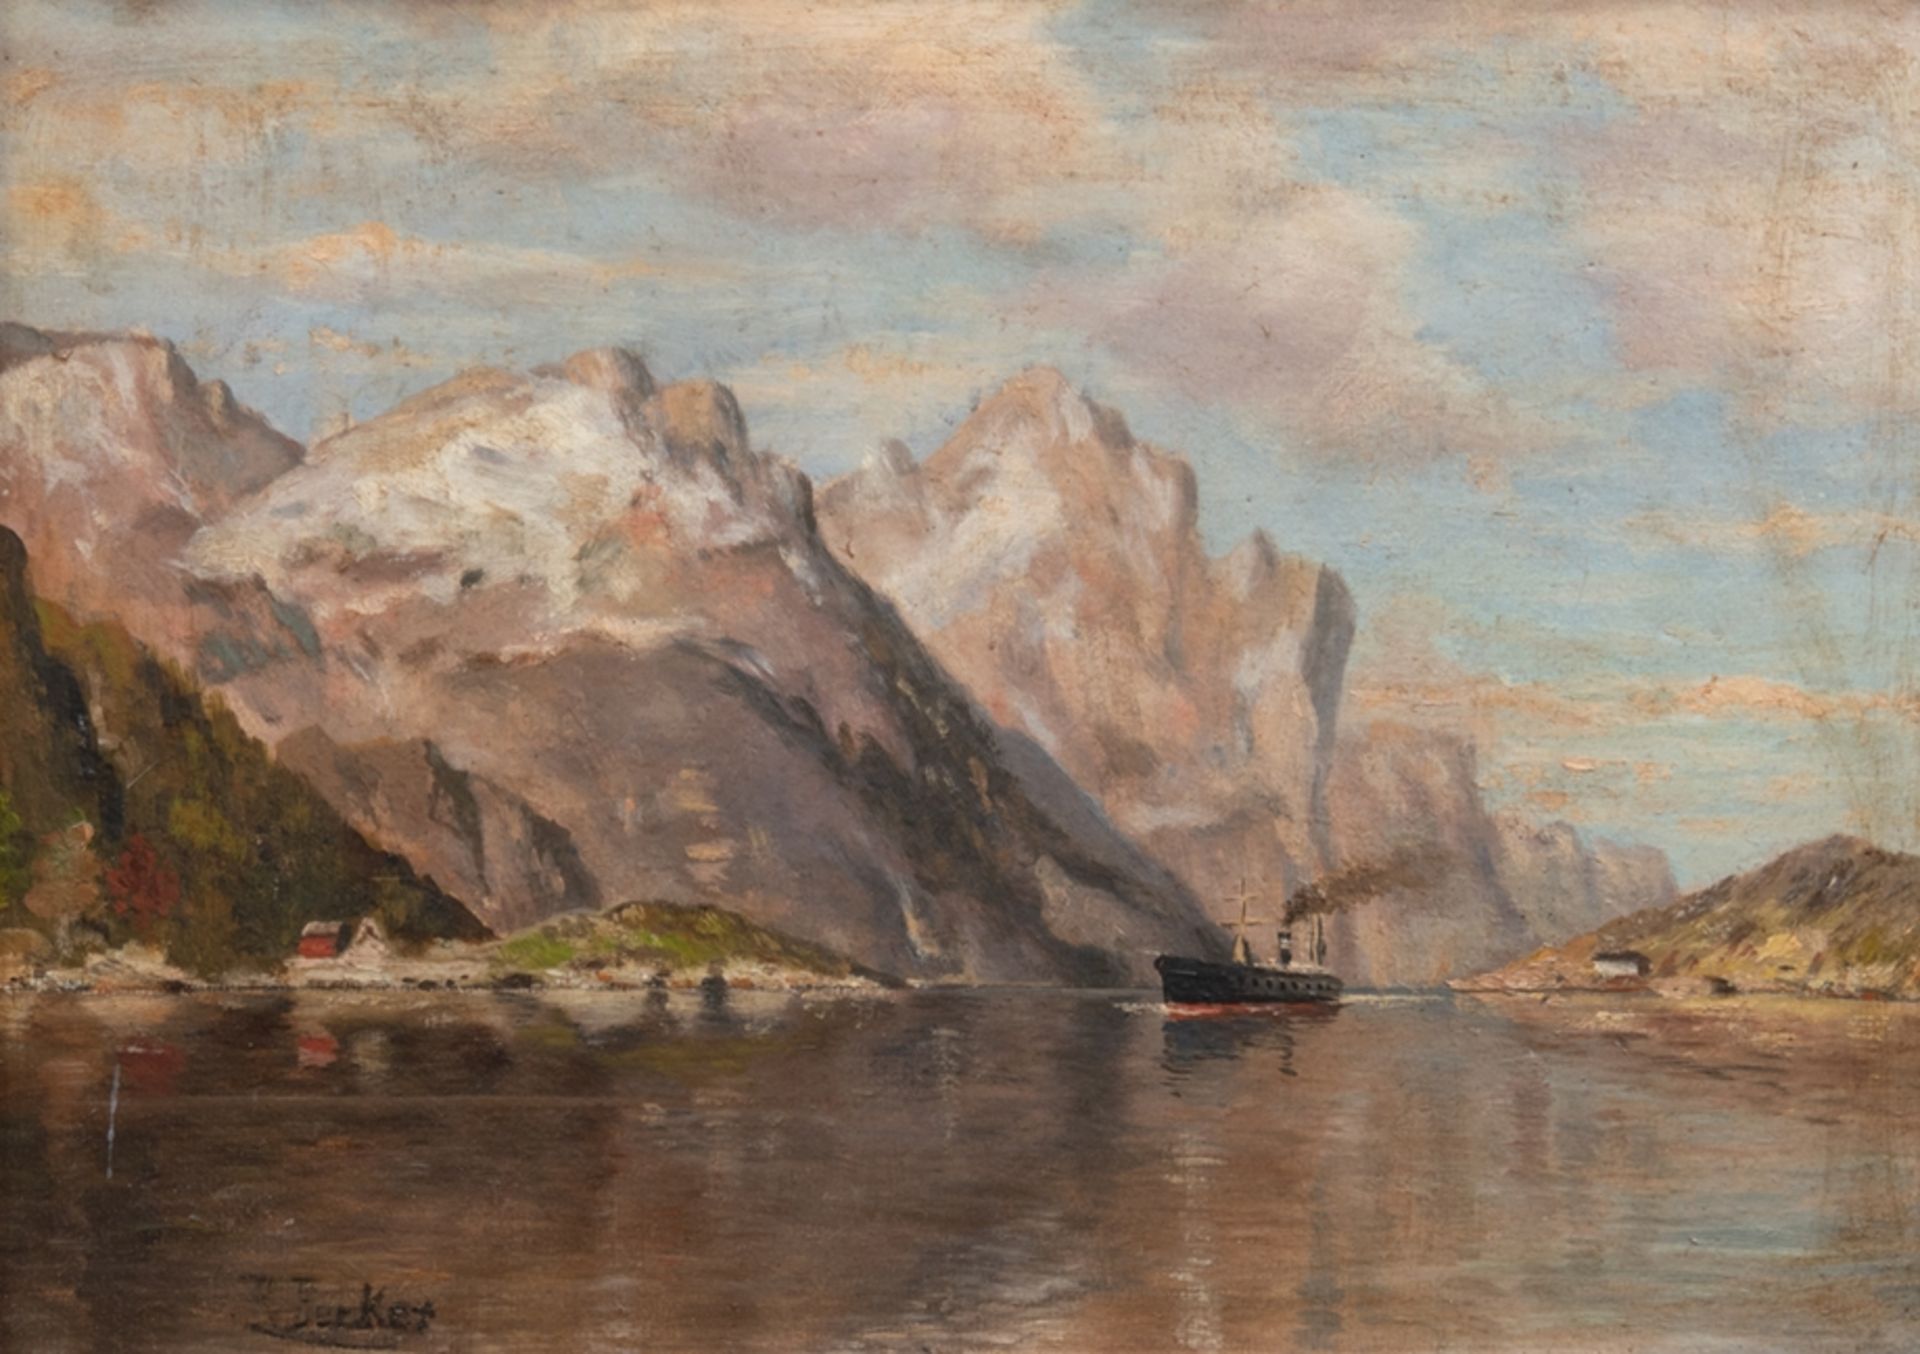 Becker, Rudolf (1856 Hamburg-nach 1891) "Fjord in Norwegen", Öl/Malplatte, sign. u.l. "R. Becker".